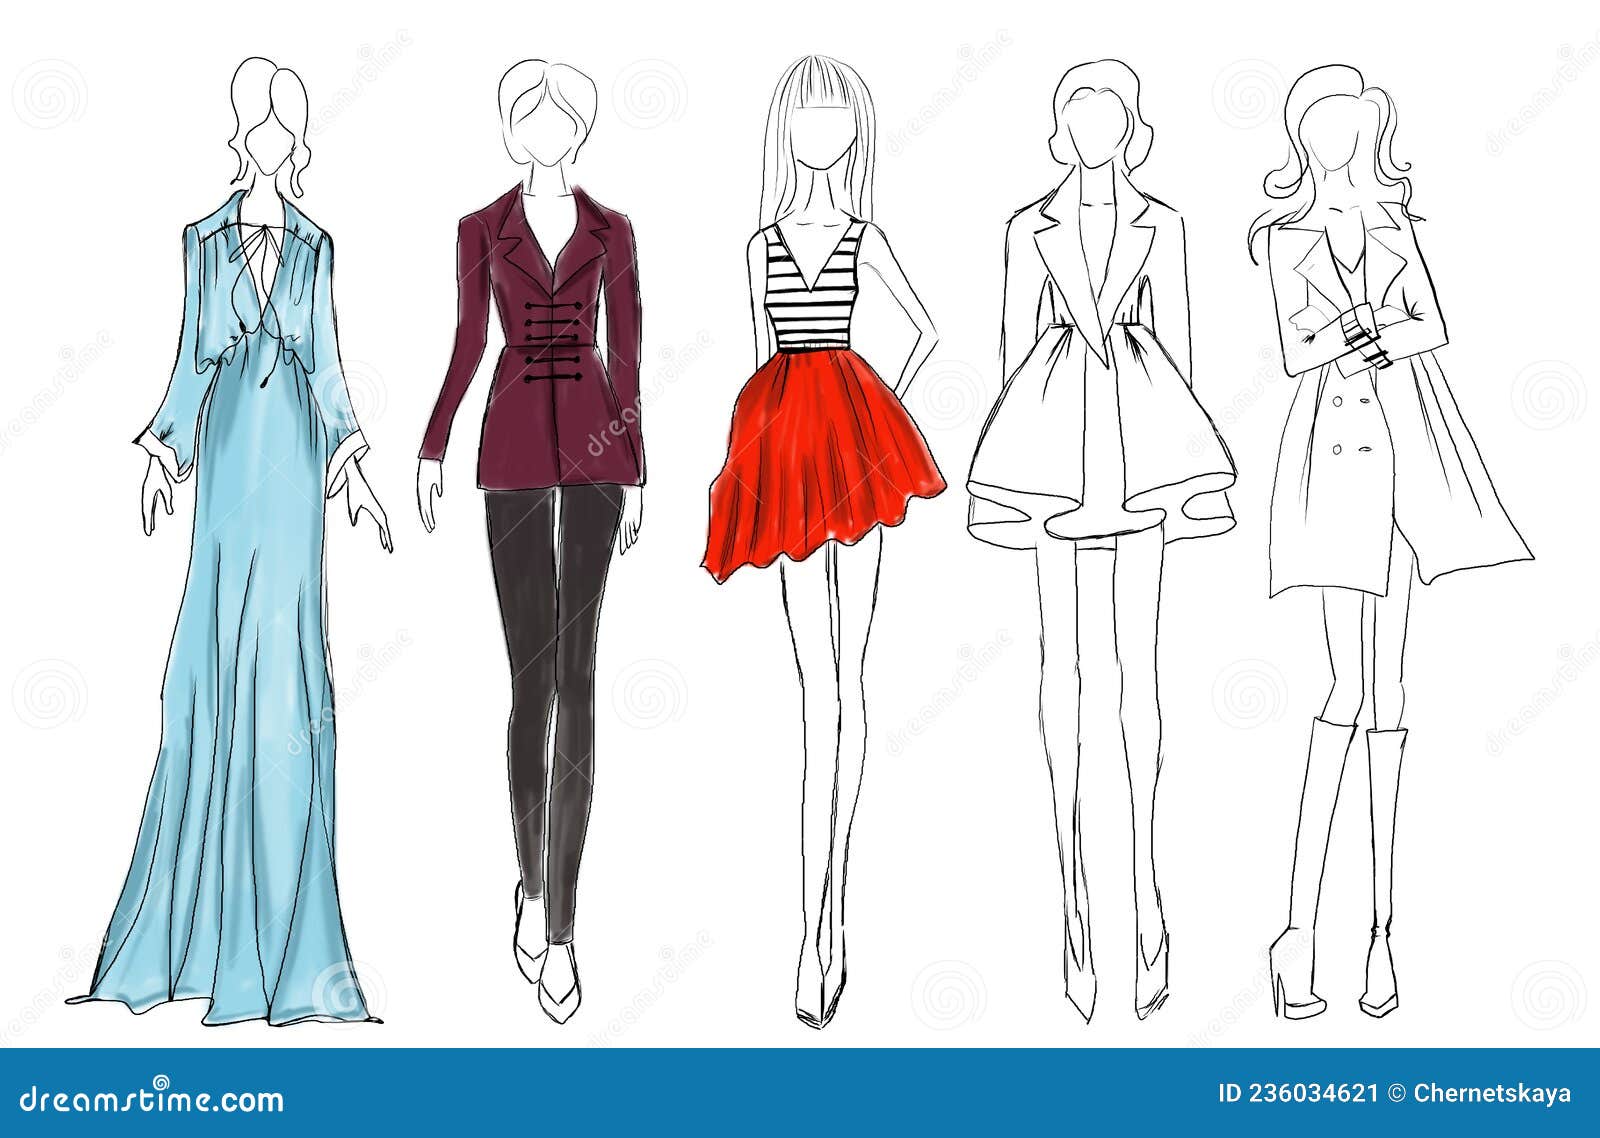 Dress model drawing Vectors & Illustrations for Free Download | Freepik-atpcosmetics.com.vn